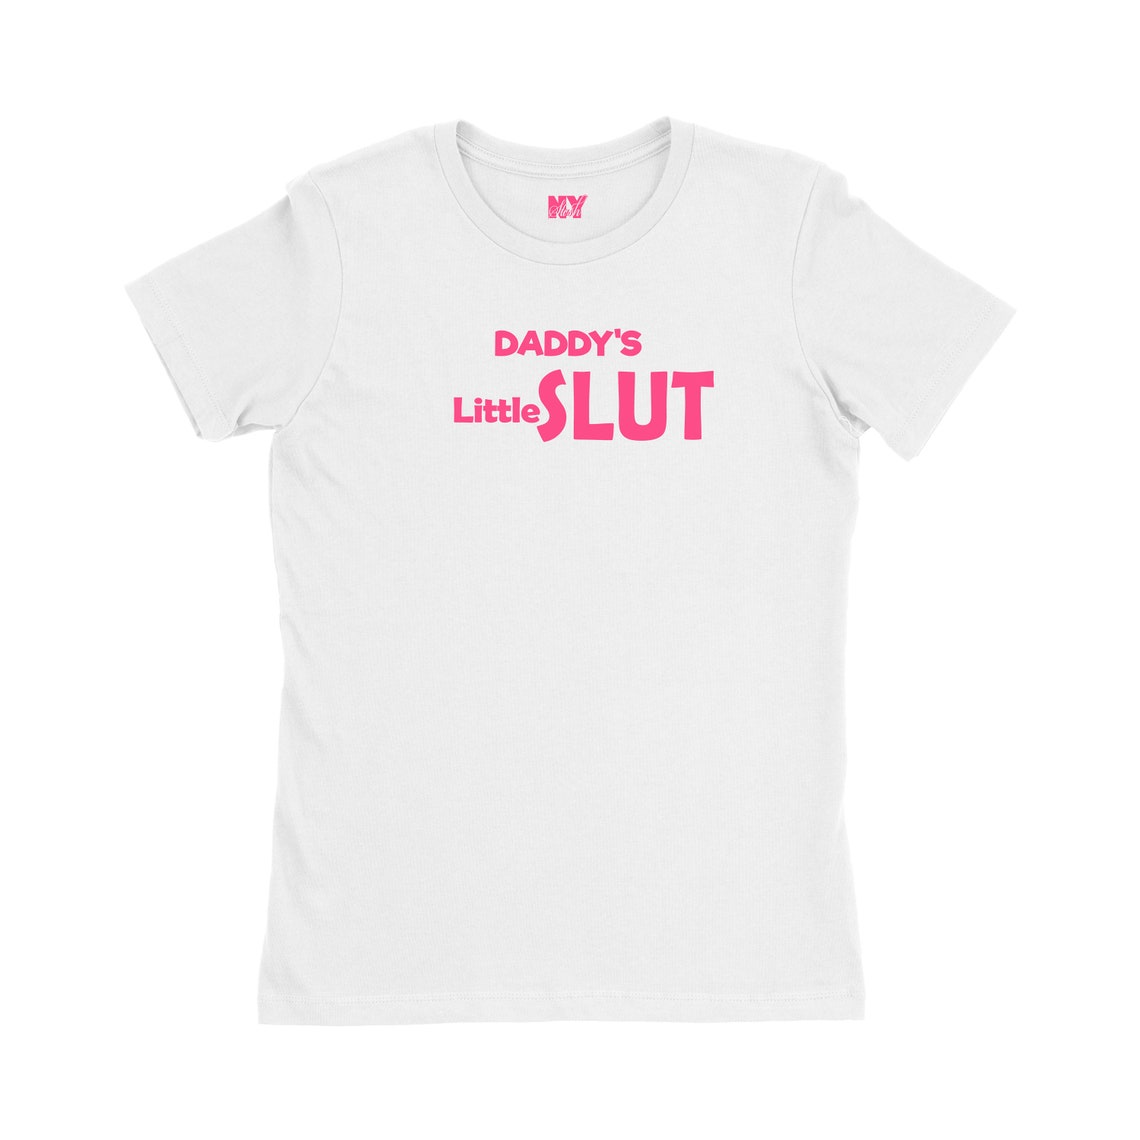 Daddys Little Slut Shirt Ddlg Clothing Sexy Slutty Cute Funny Etsy Uk